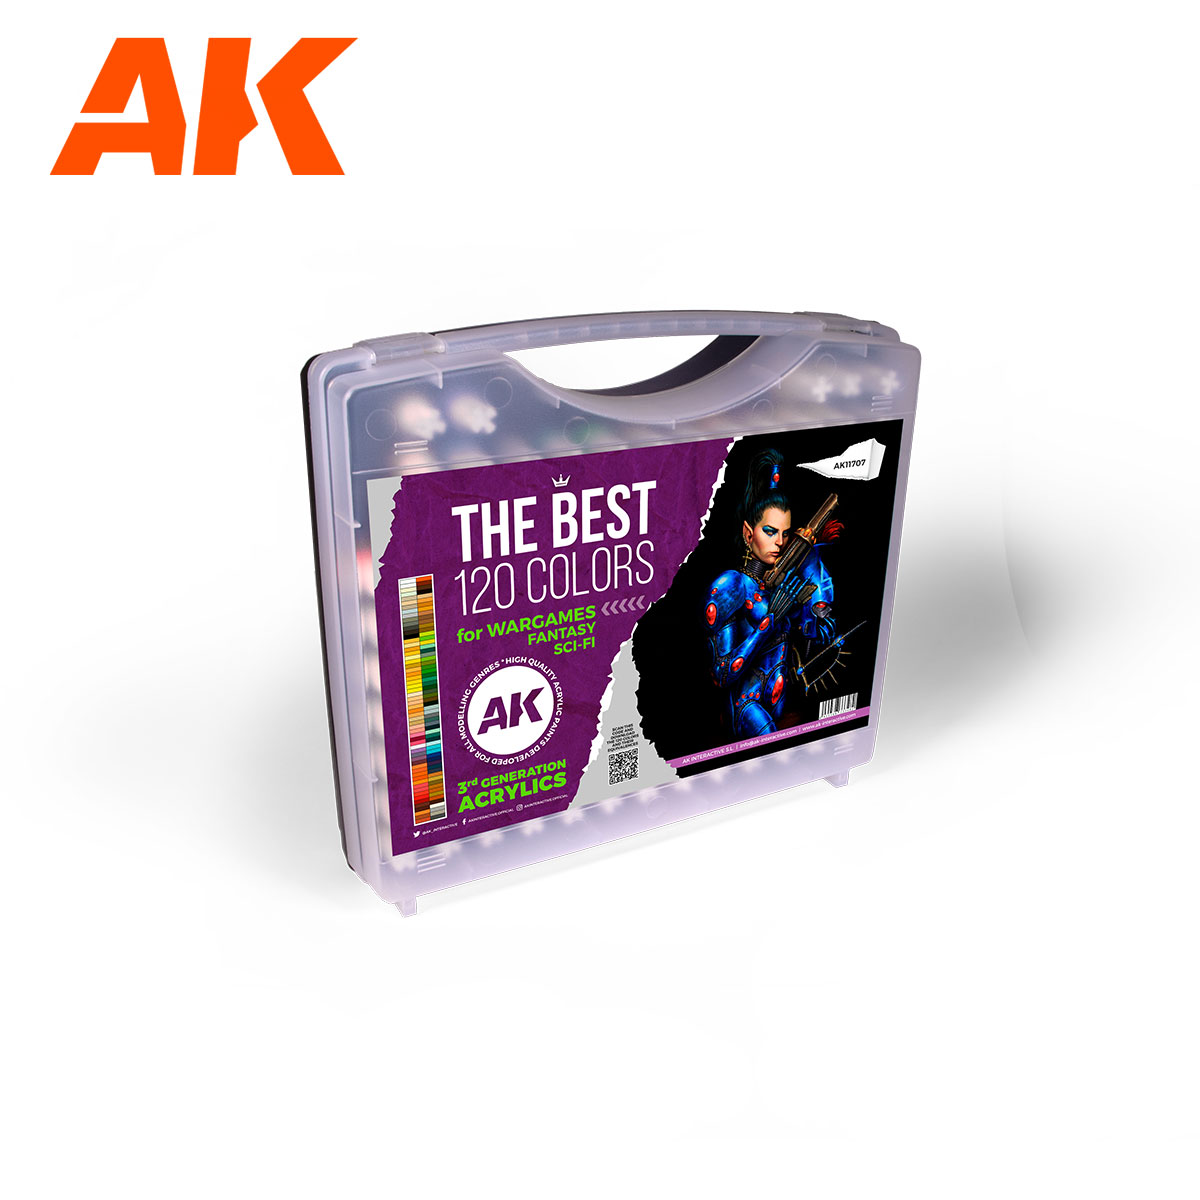 Maxireves a choisi pour vous cette superbe AK 3G Malette 120 colors for Wargames afin que vous puissiez découvrir la magnifique gamme de set AK 3G